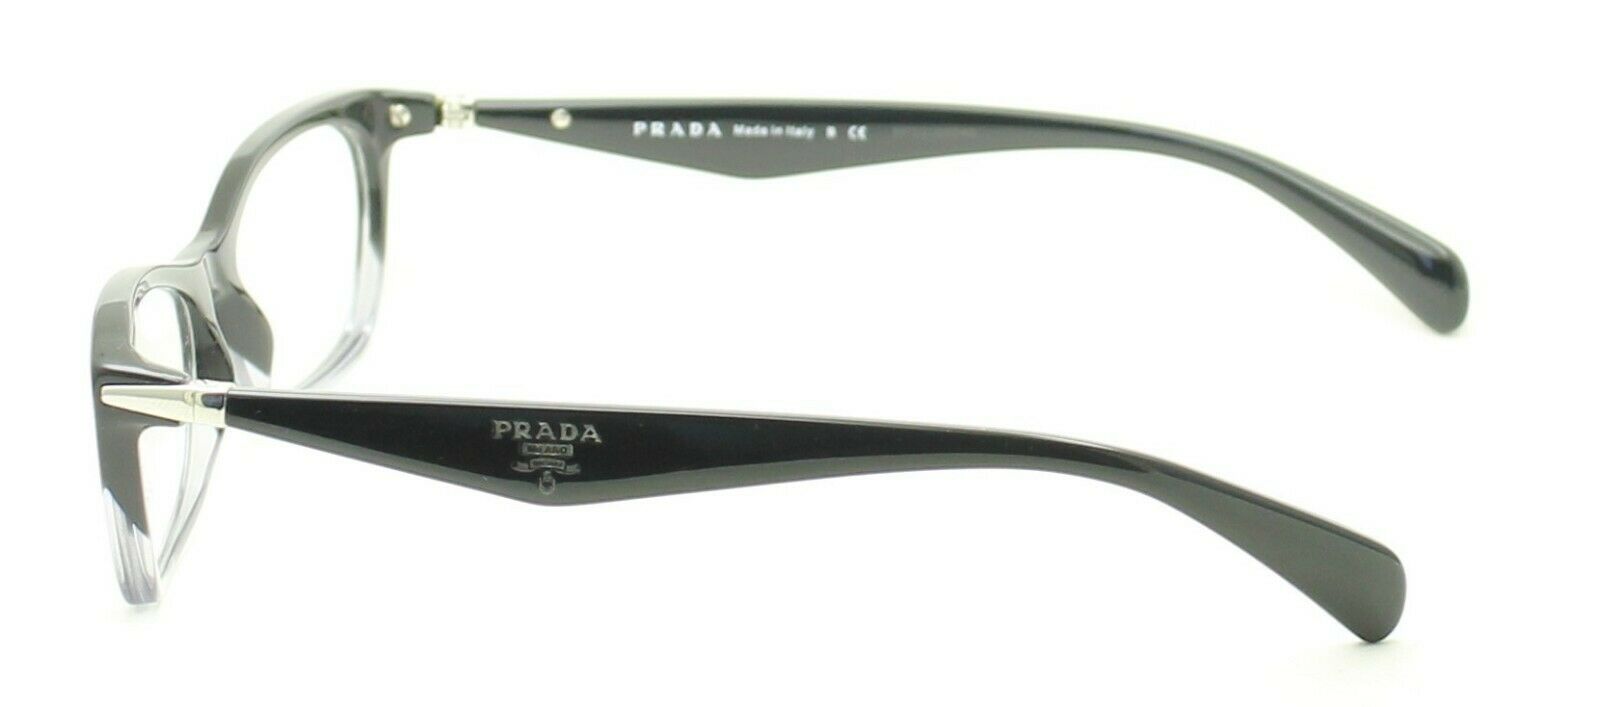 PRADA VPR 15P ZYY-1O1 53mm Eyewear FRAMES RX Optical Eyeglasses Glasses - Italy